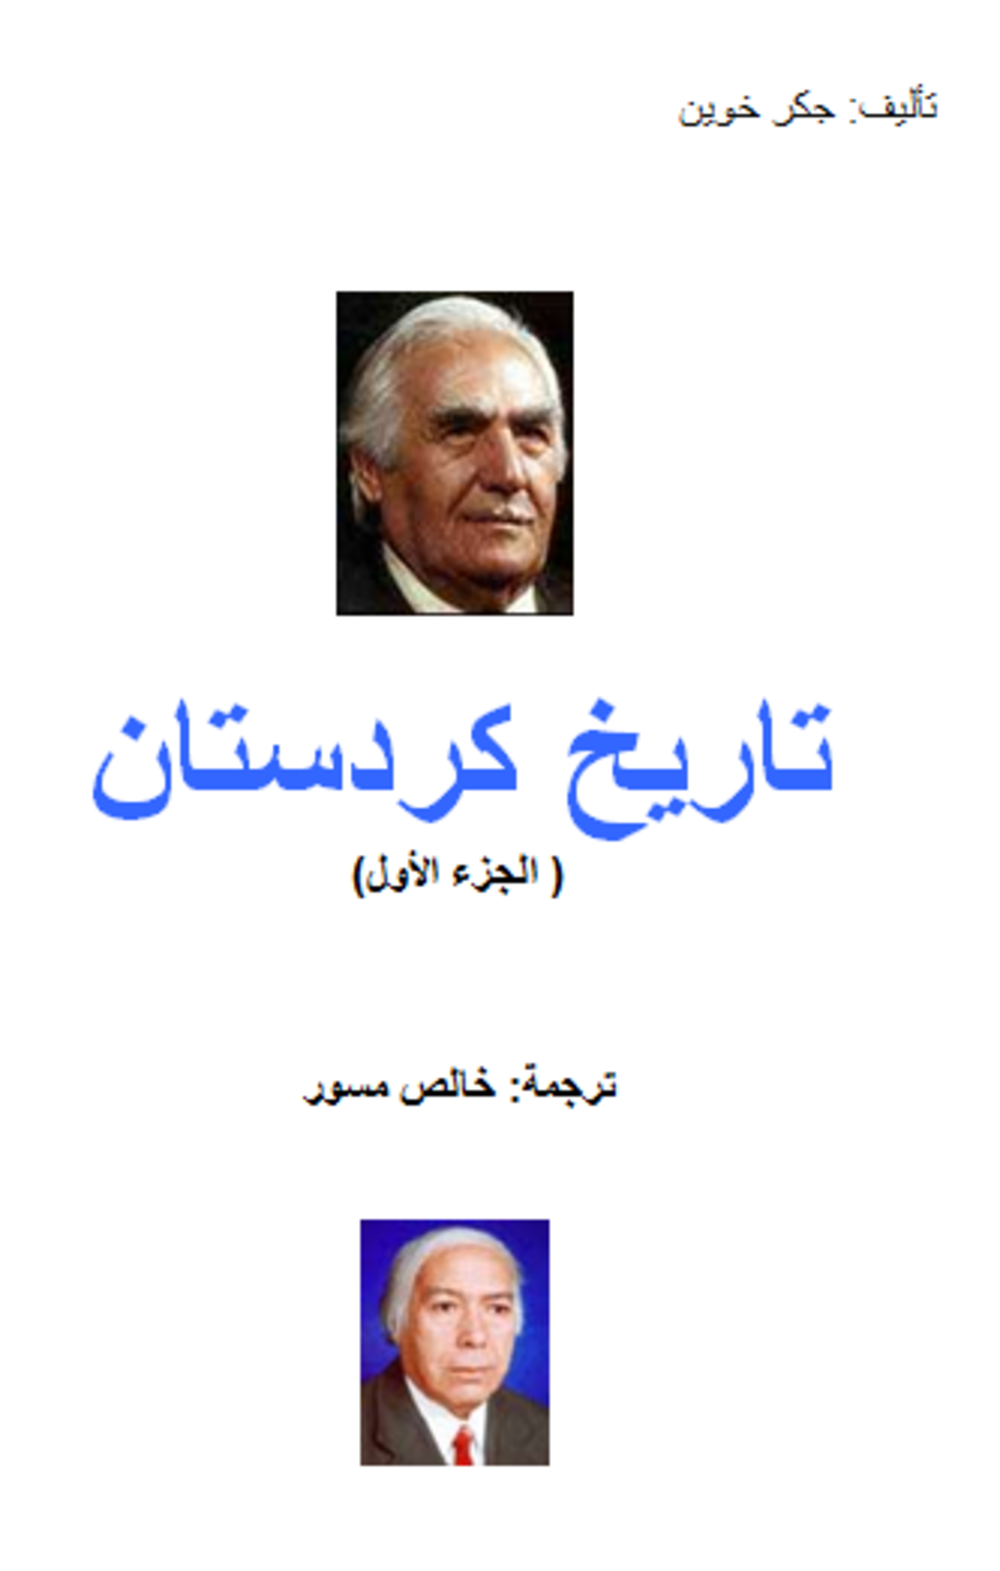 غلاف كتاب تاريخ كردستان.. ترجمة خالص مسور/ إنترنت